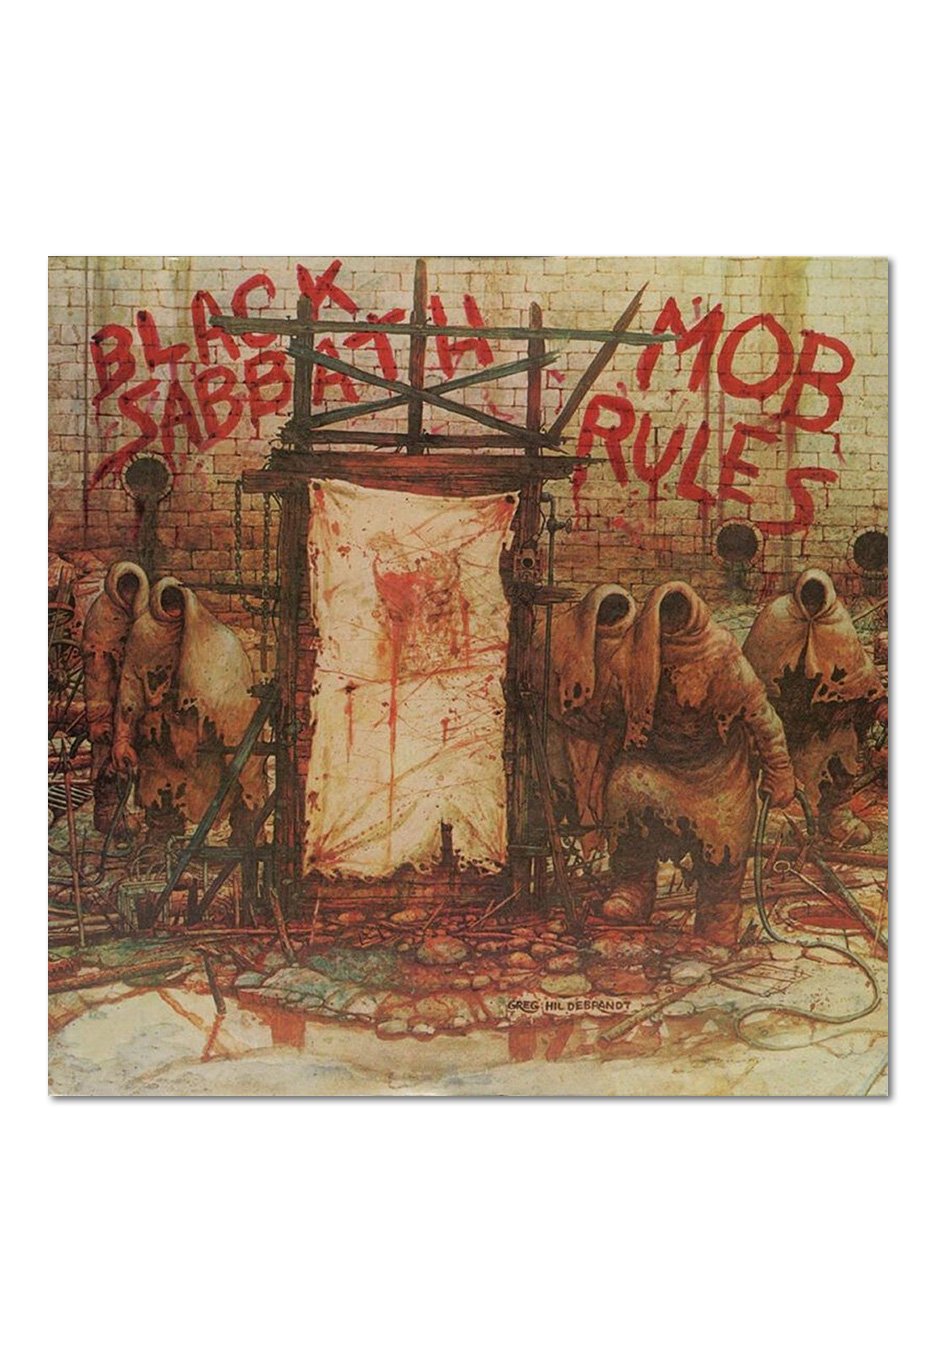 Black Sabbath - Mob Rules - 2 CD